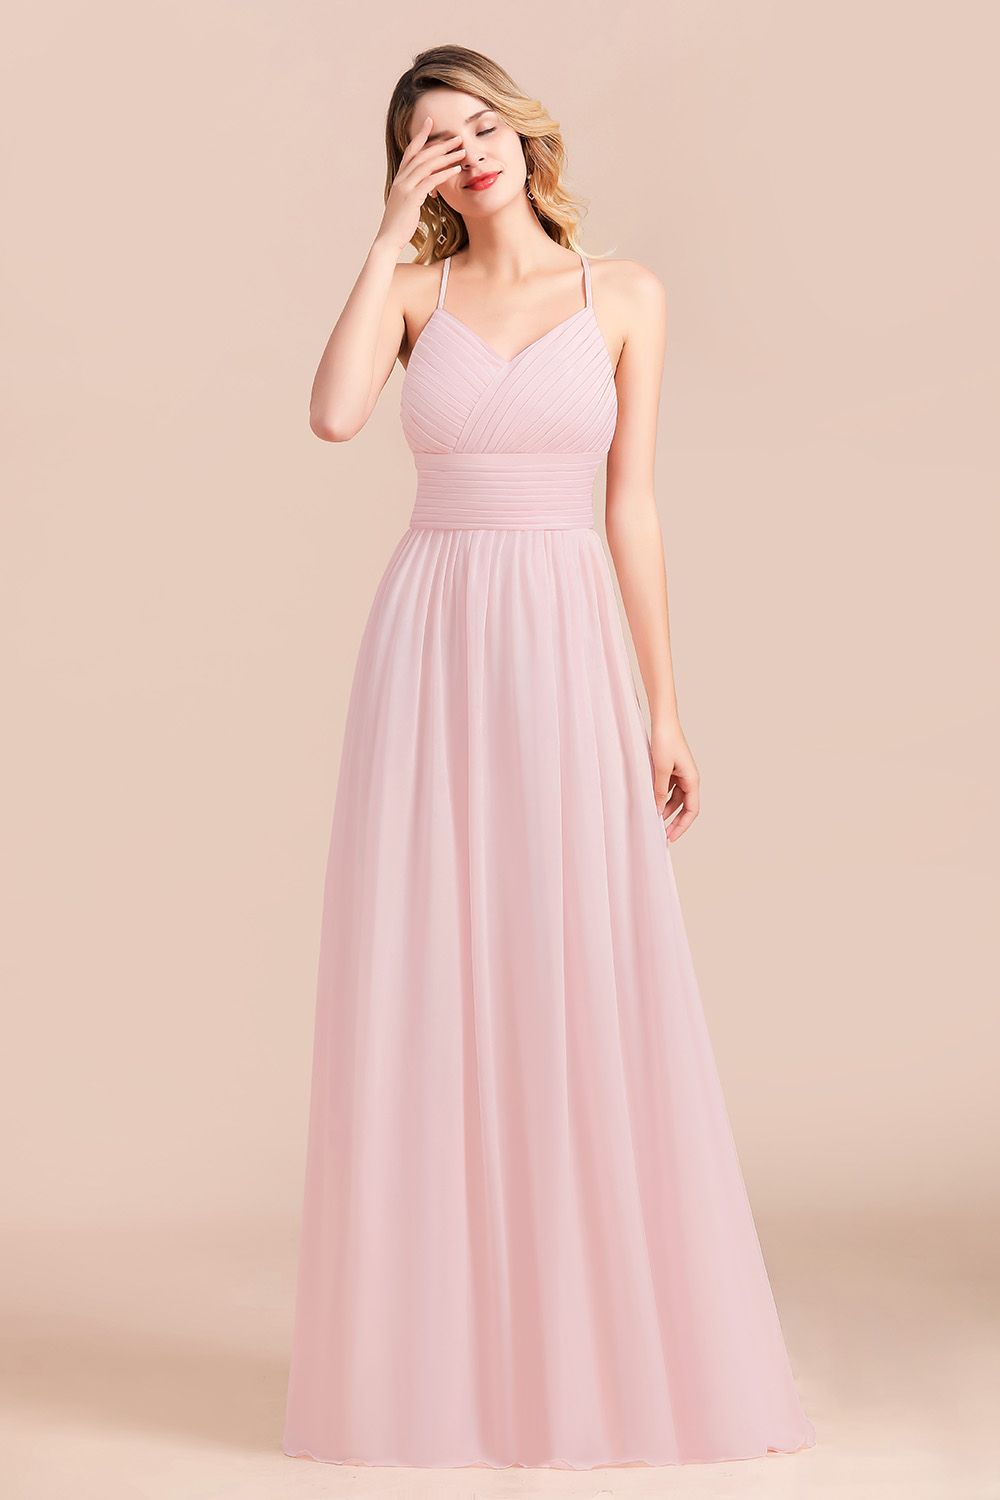 Gorgeous Spaghetti Straps Ruffle Pink Chiffon Bridesmaid Dress Affordable-27dress